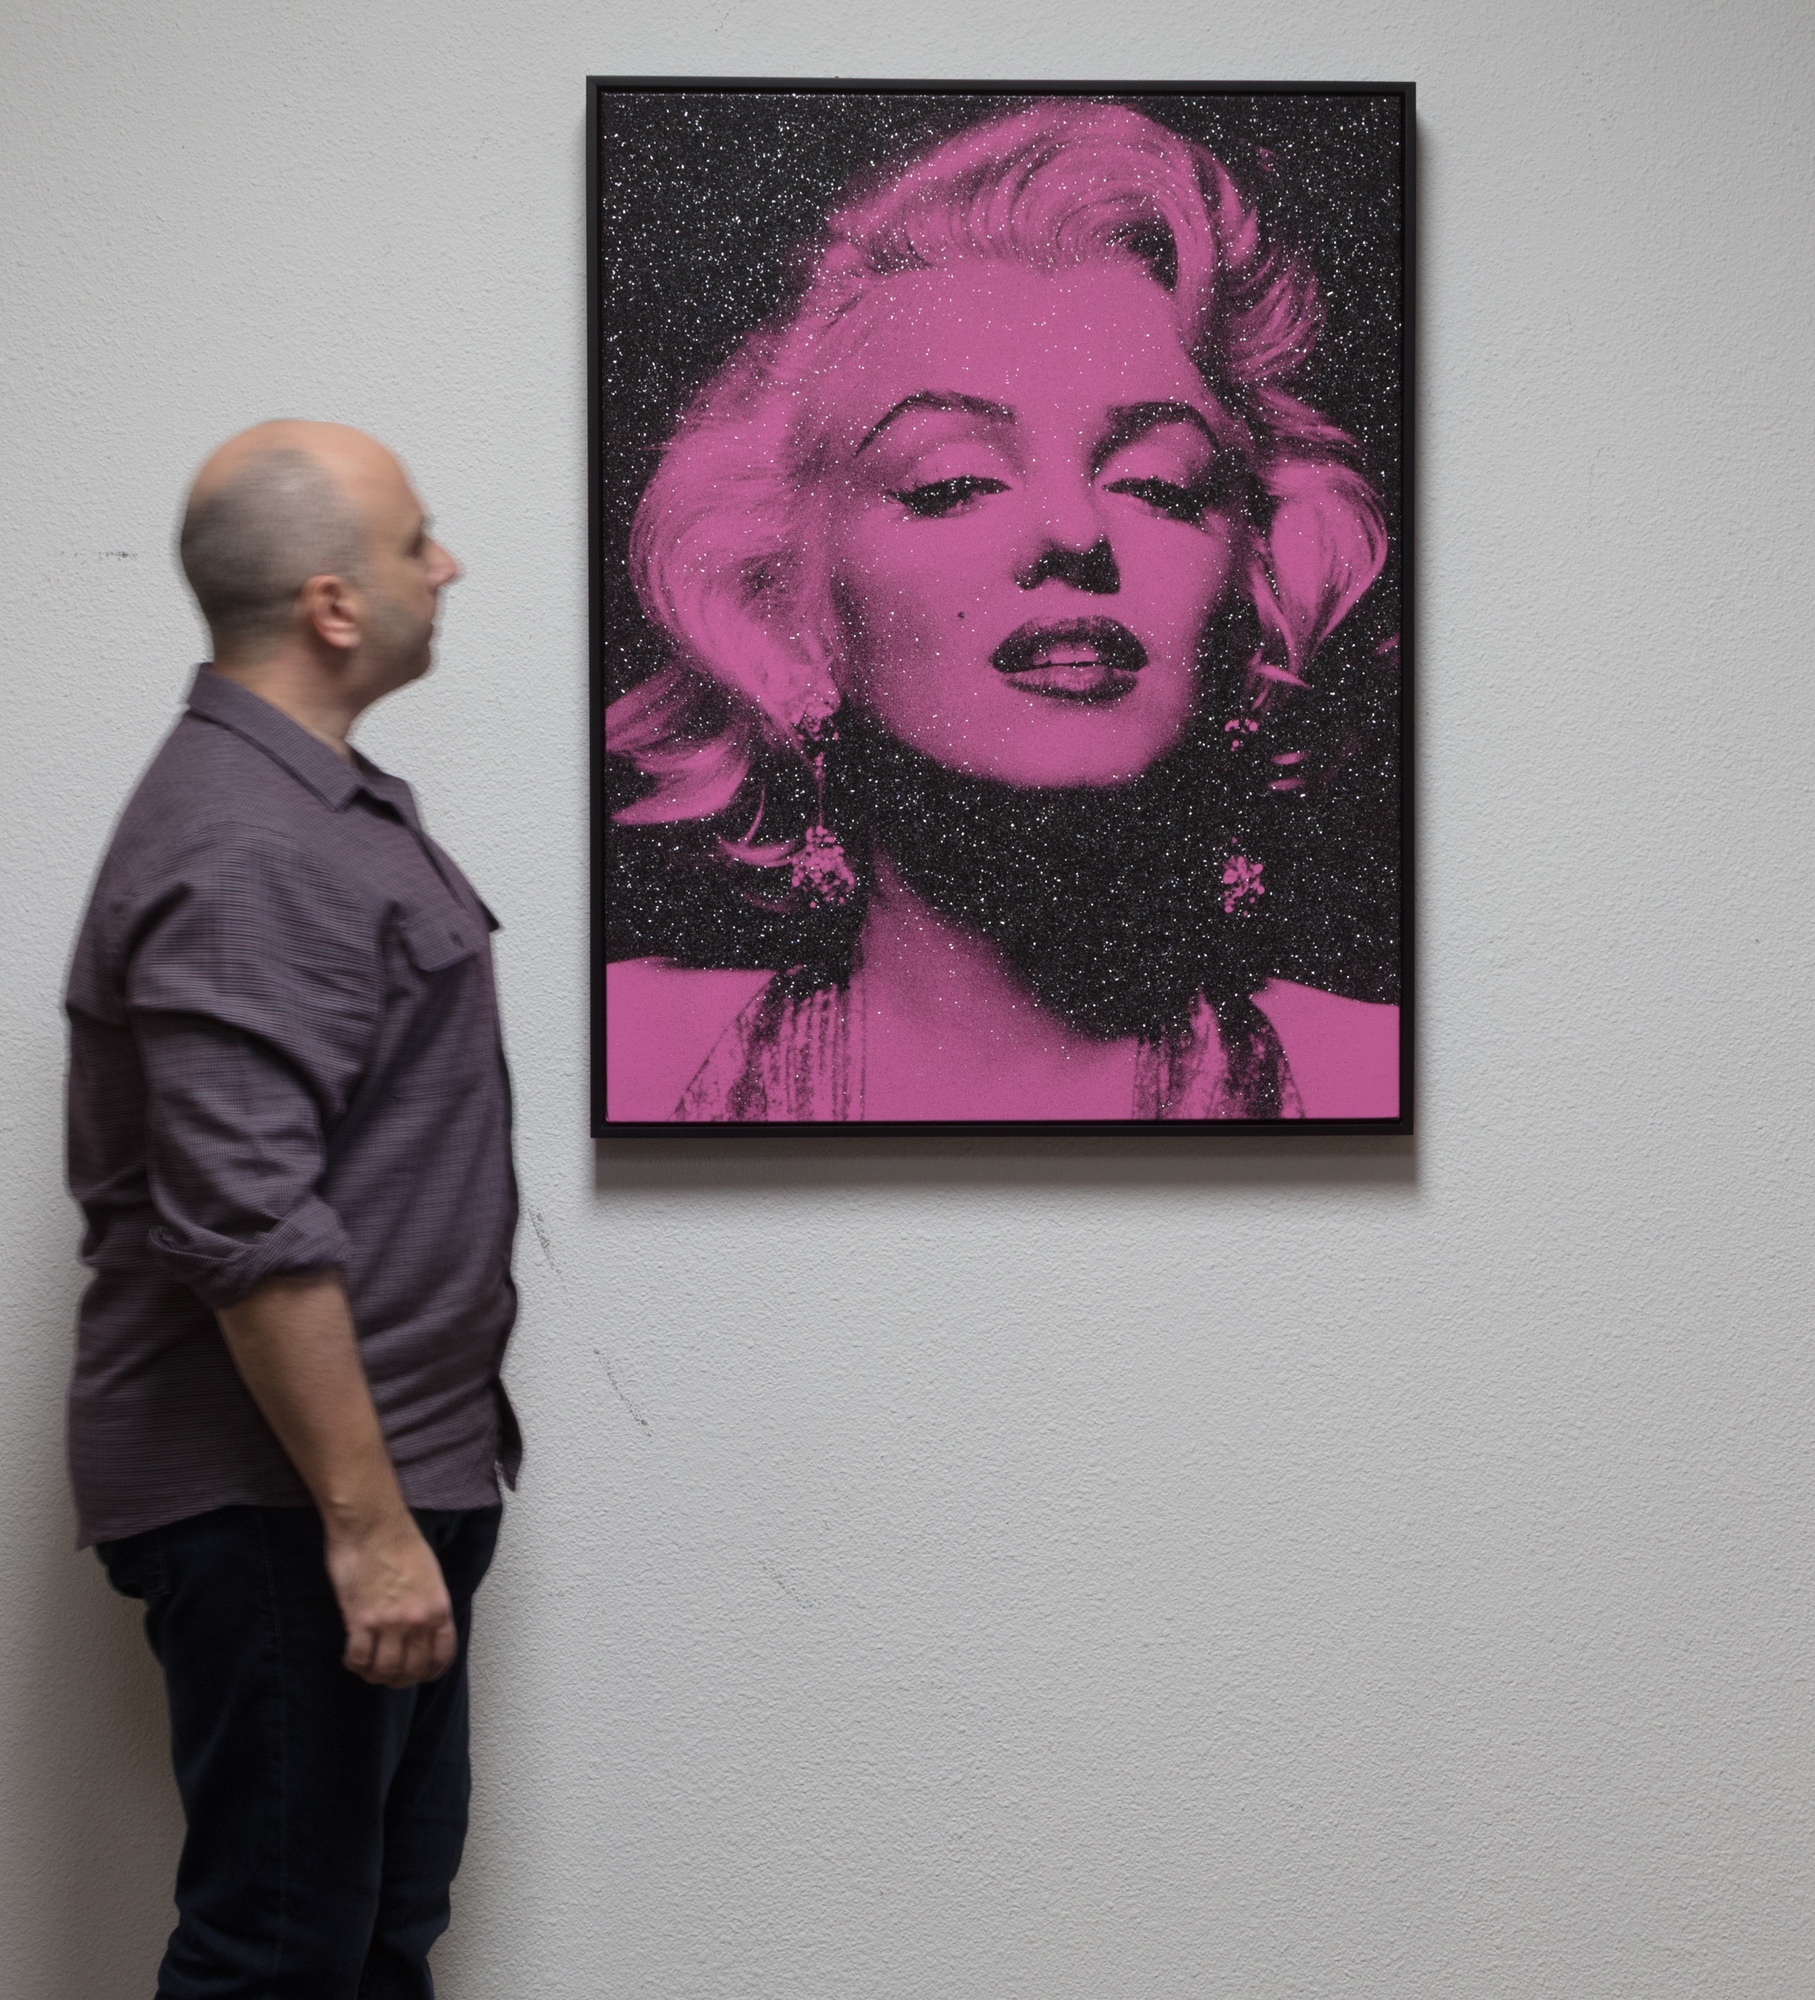 RUSSELL YOUNG - Marilyn Portrait - スクリーンプリント、リネン、ダイヤモンドダスト - 35 3/4 x 27 3/4 in.